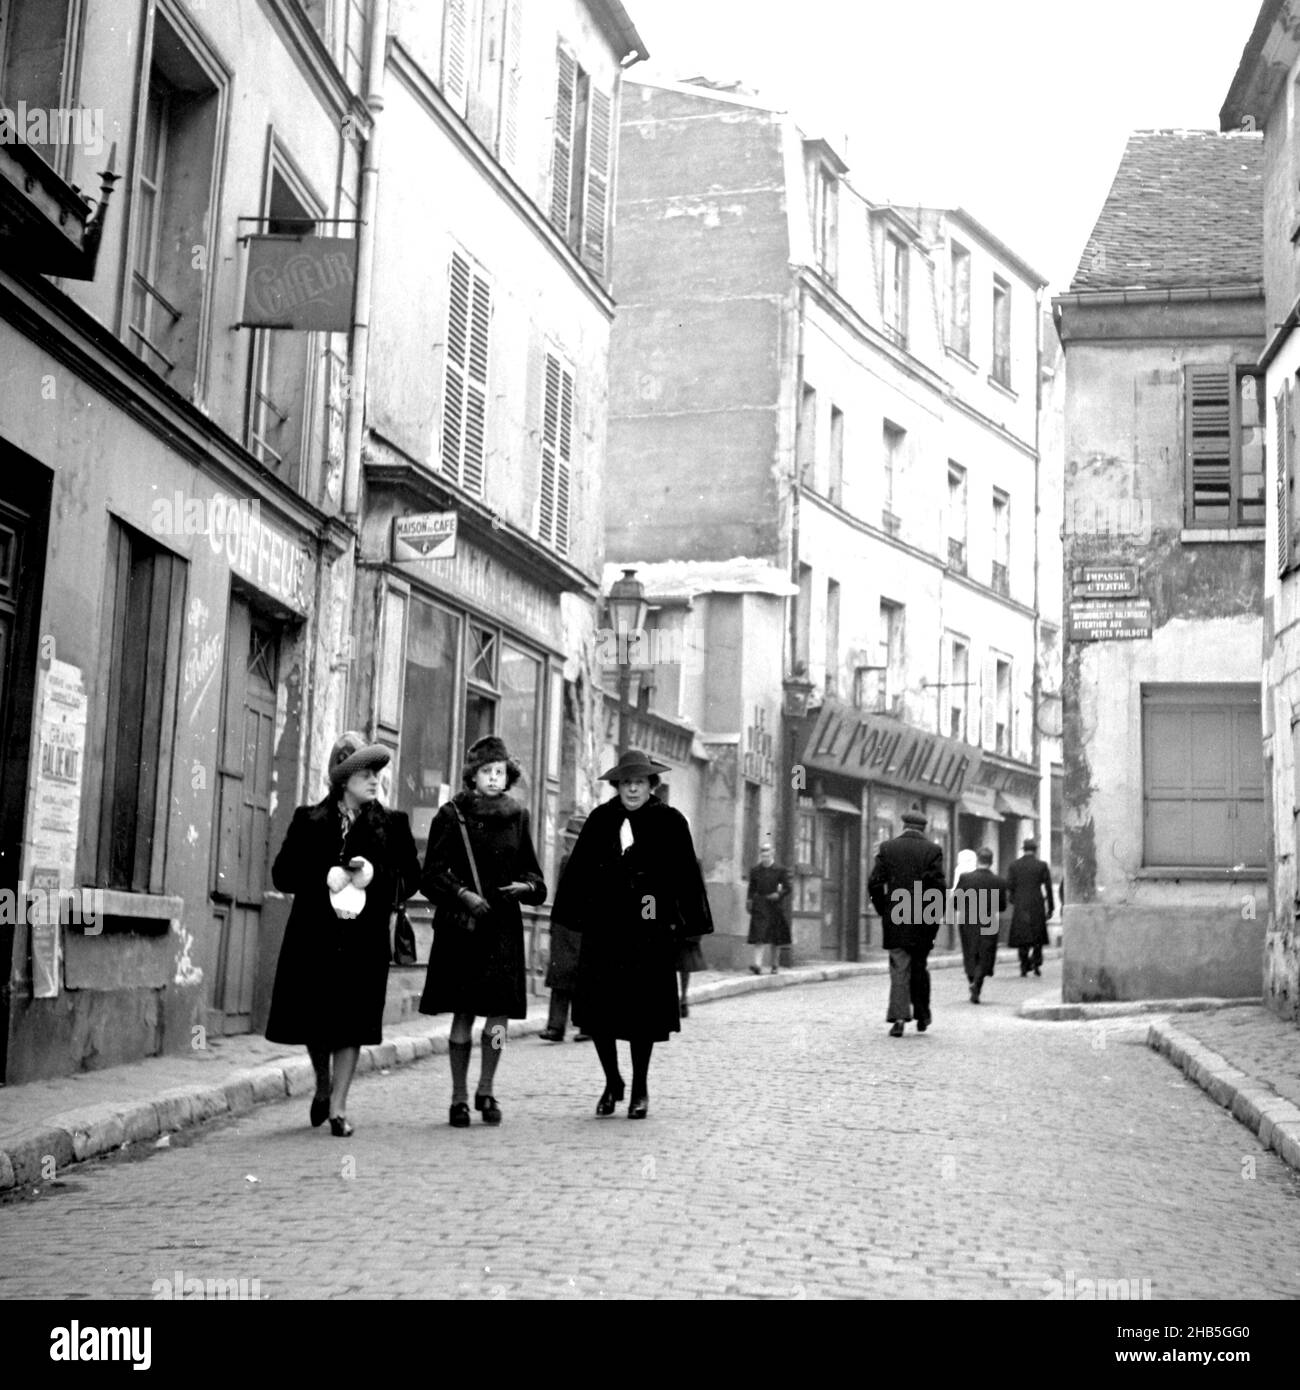 Paris Monmartre - Fußgänger auf der Rue Norvins, Winter 1945. Der Fotograf steht vor der Rue Norvins 3, um die Fußgänger in einer intimen Umgebung aufzunehmen. Nur acht Spaziergänger sind zu sehen. Die Schlüsselgruppe ist eine junge Frau, die mit zwei Frauen mittleren Alters an ihrer Seite läuft. Zwei der drei Augen der Fotograf; die junge Frau sieht alarmiert aus. Kleidung zeigt an, dass es ein kalter Tag ist. Stockfoto